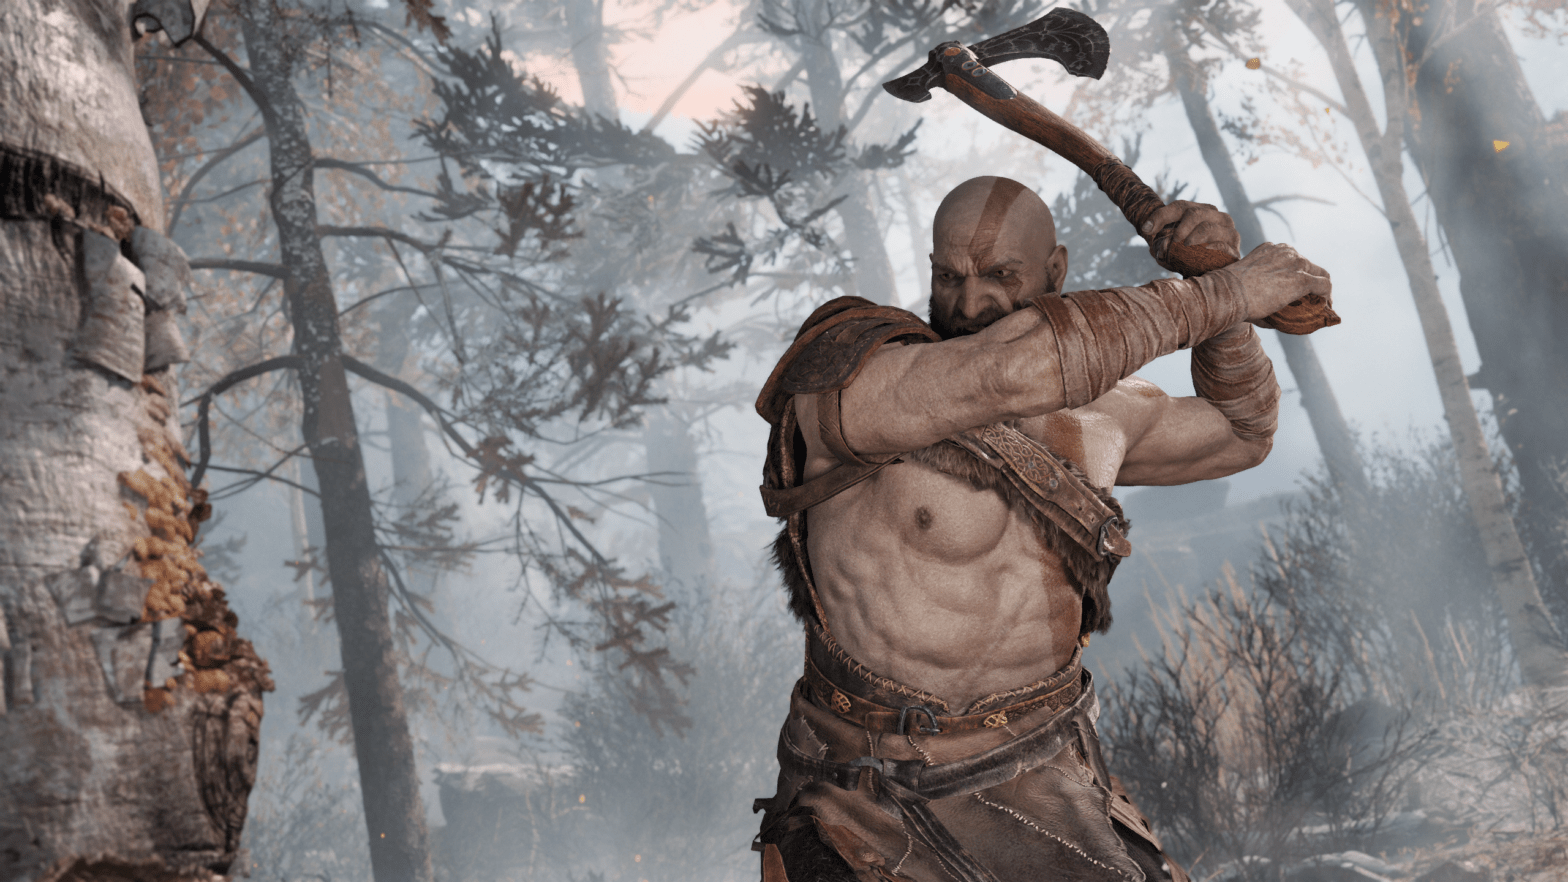 Kratos swinging his leviathan axe